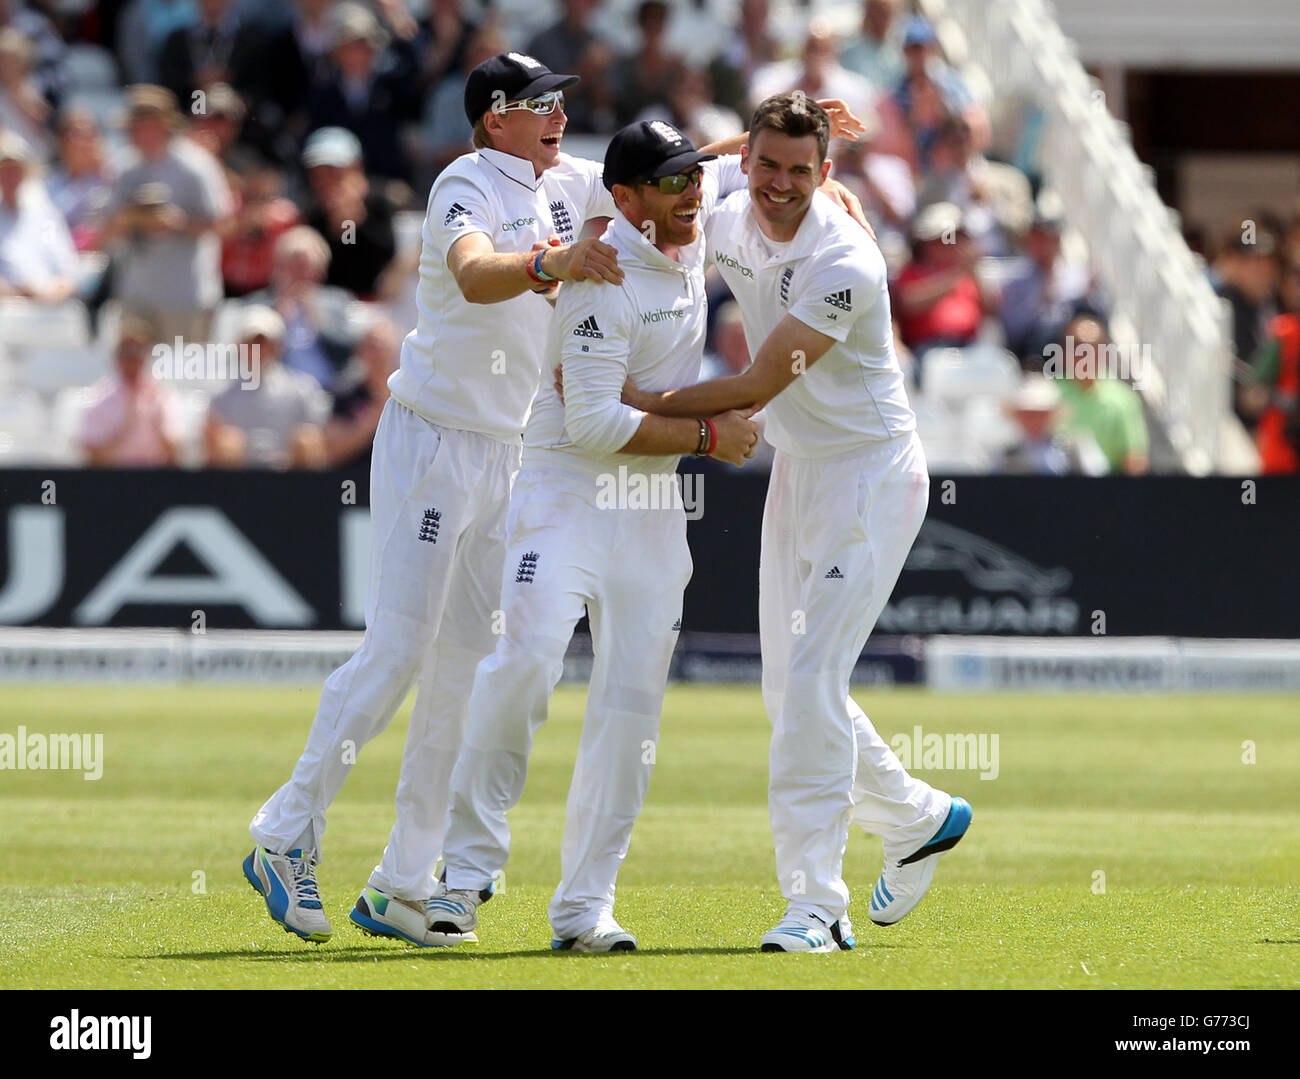 James Anderson, in Inghilterra, celebra la presa del wicket degli indiani Cheteshwar Pujara con i compagni di squadra Joe Root (a sinistra) e Ian dell'Inghilterra Campana (al centro) che ha preso la presa Foto Stock